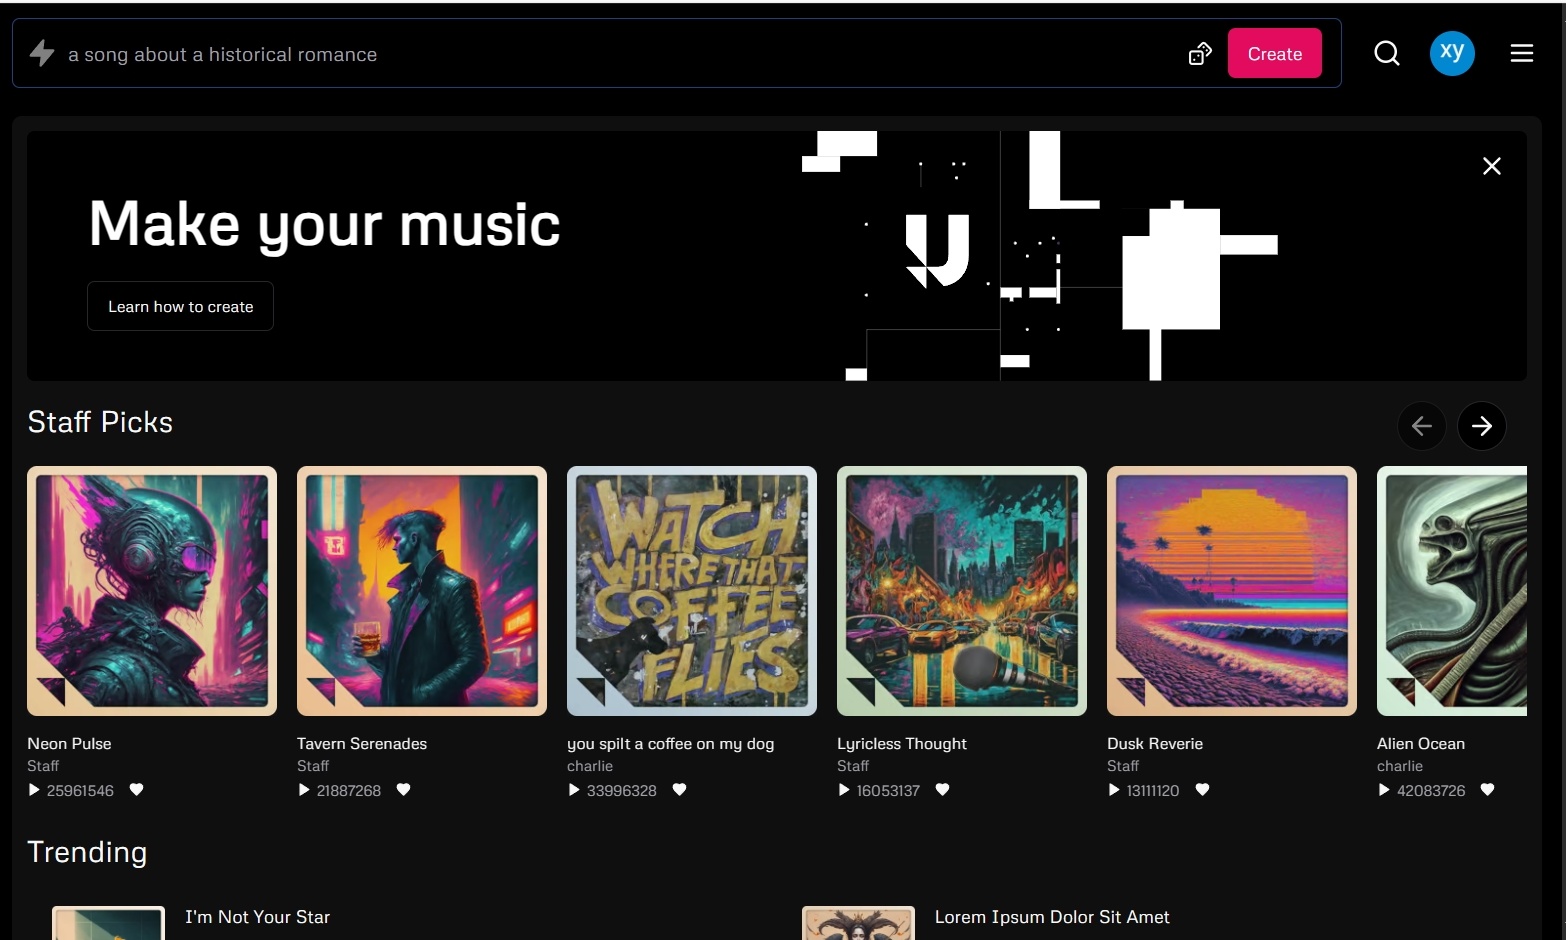 看懵专业音乐人，Udio让AI音乐进入「以假乱真」新境界？